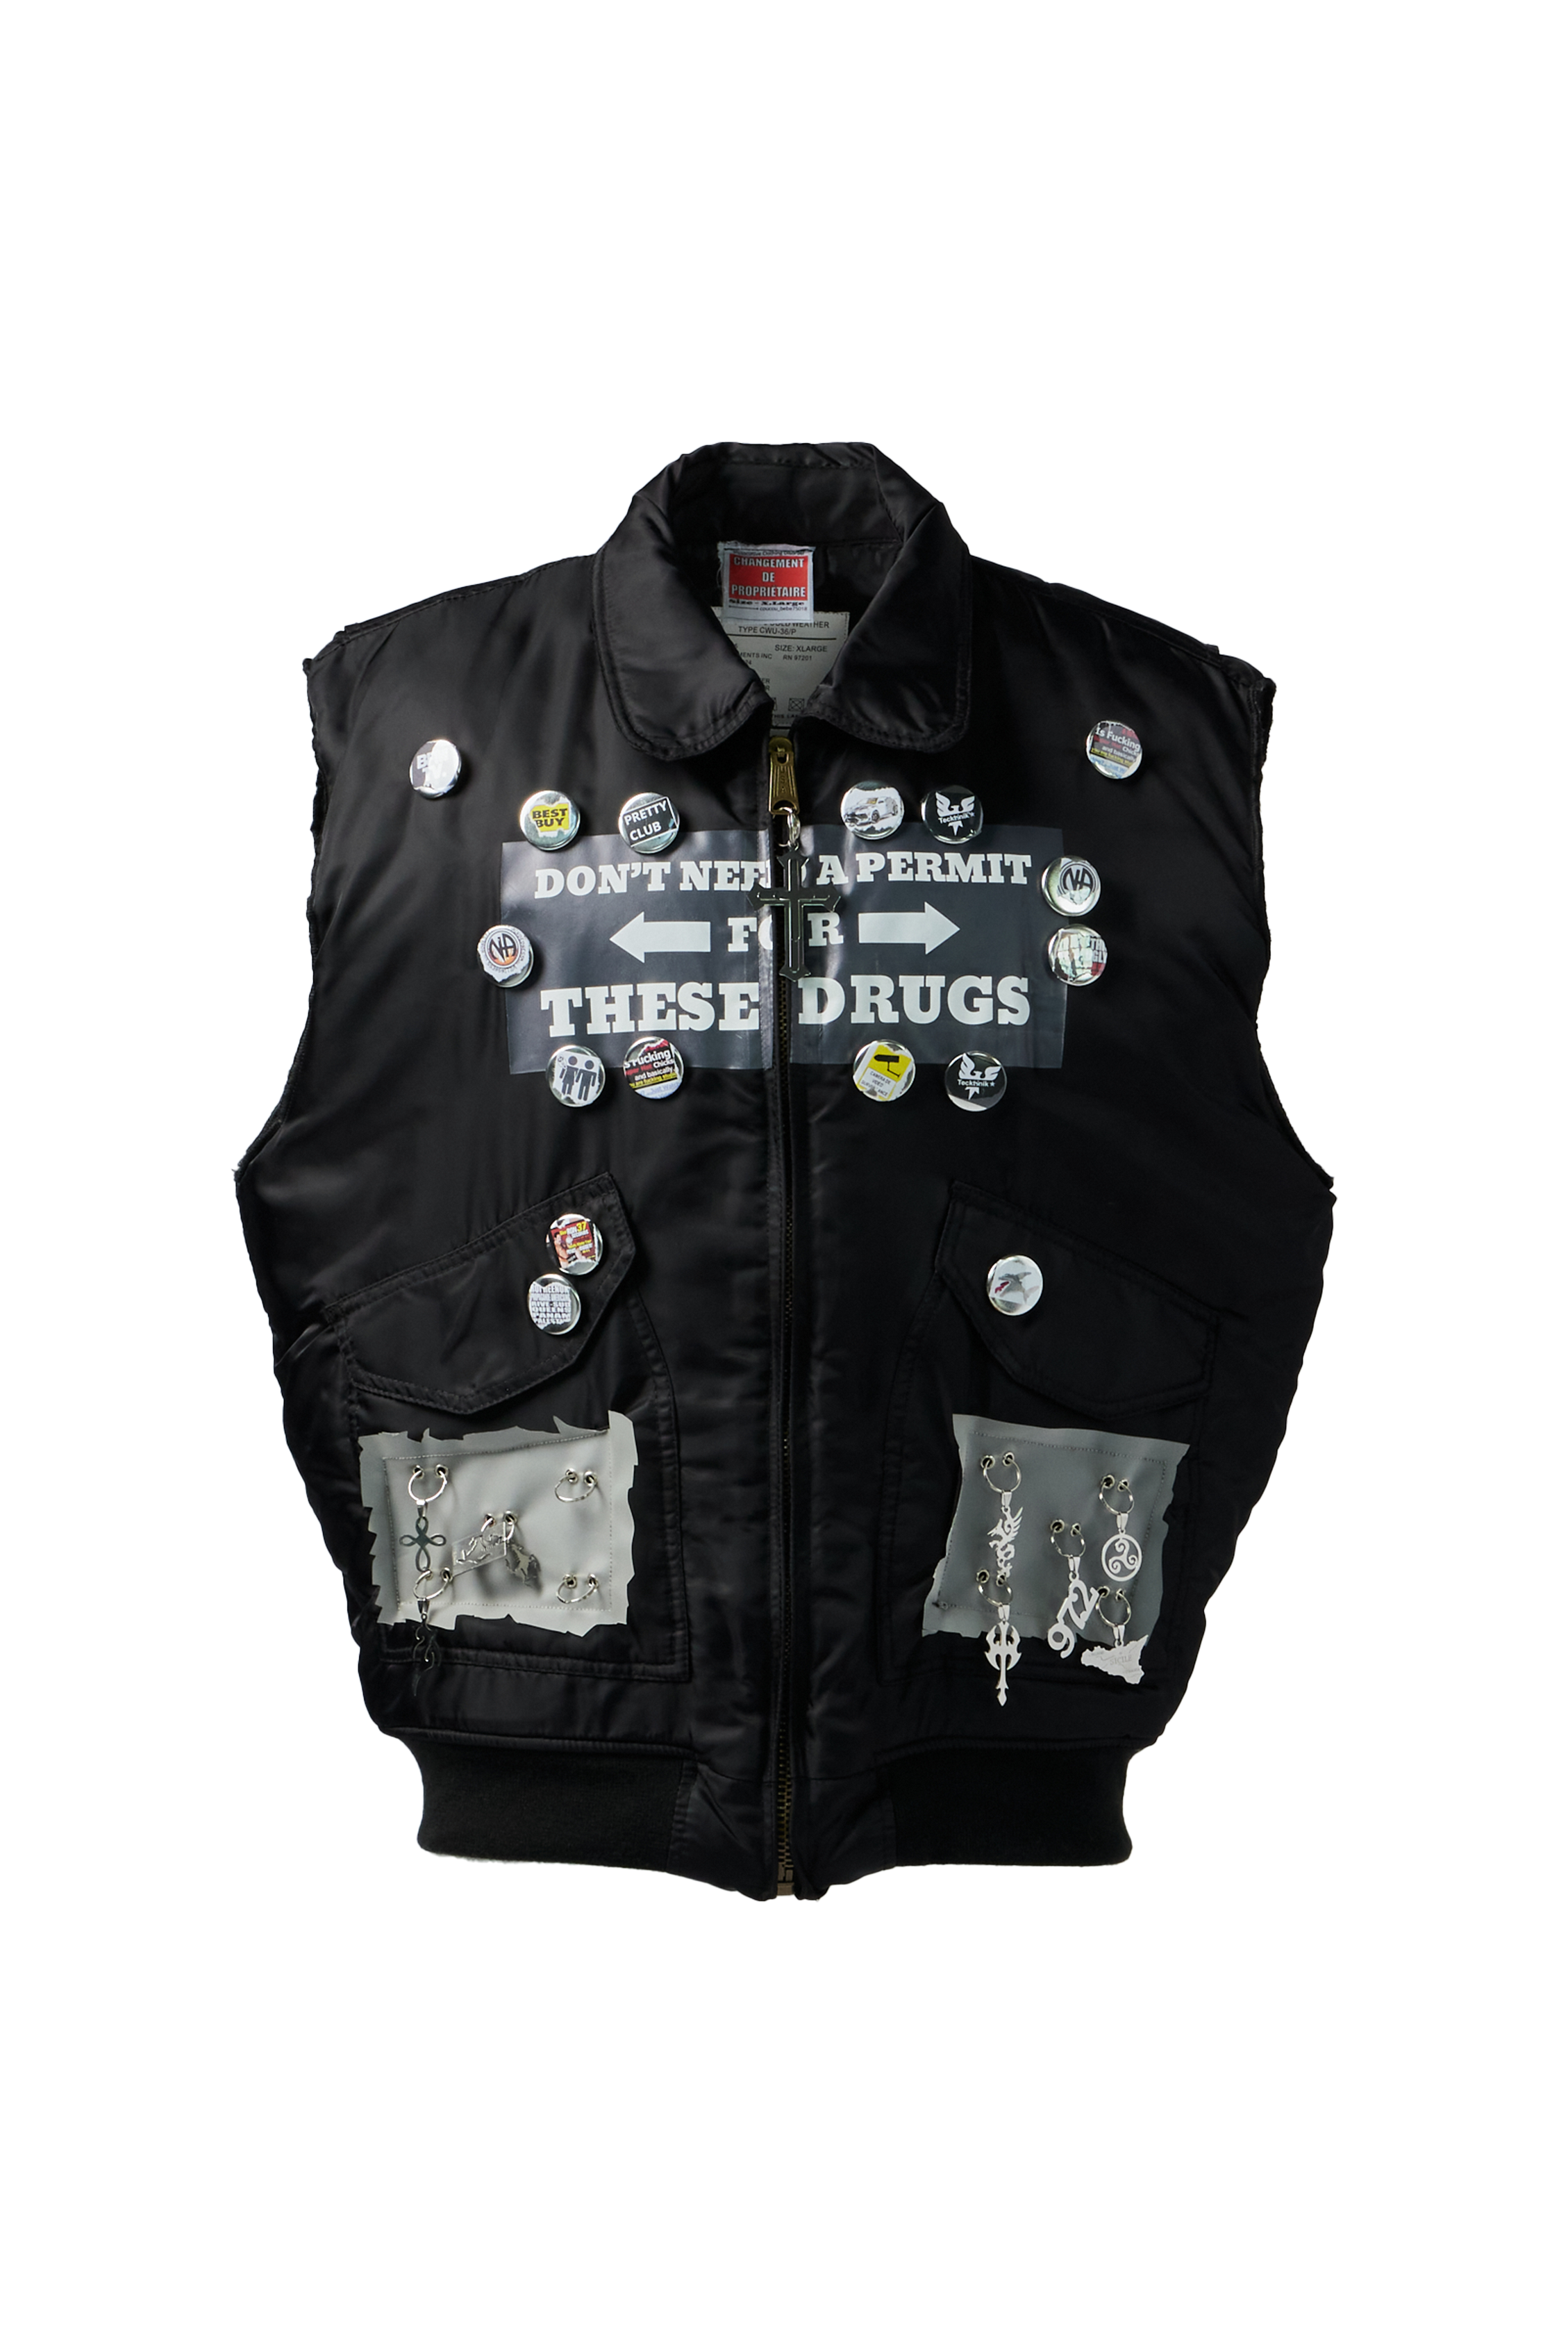 COUCOU_BEBE75018 - Permit Sleeveless Jacket product image